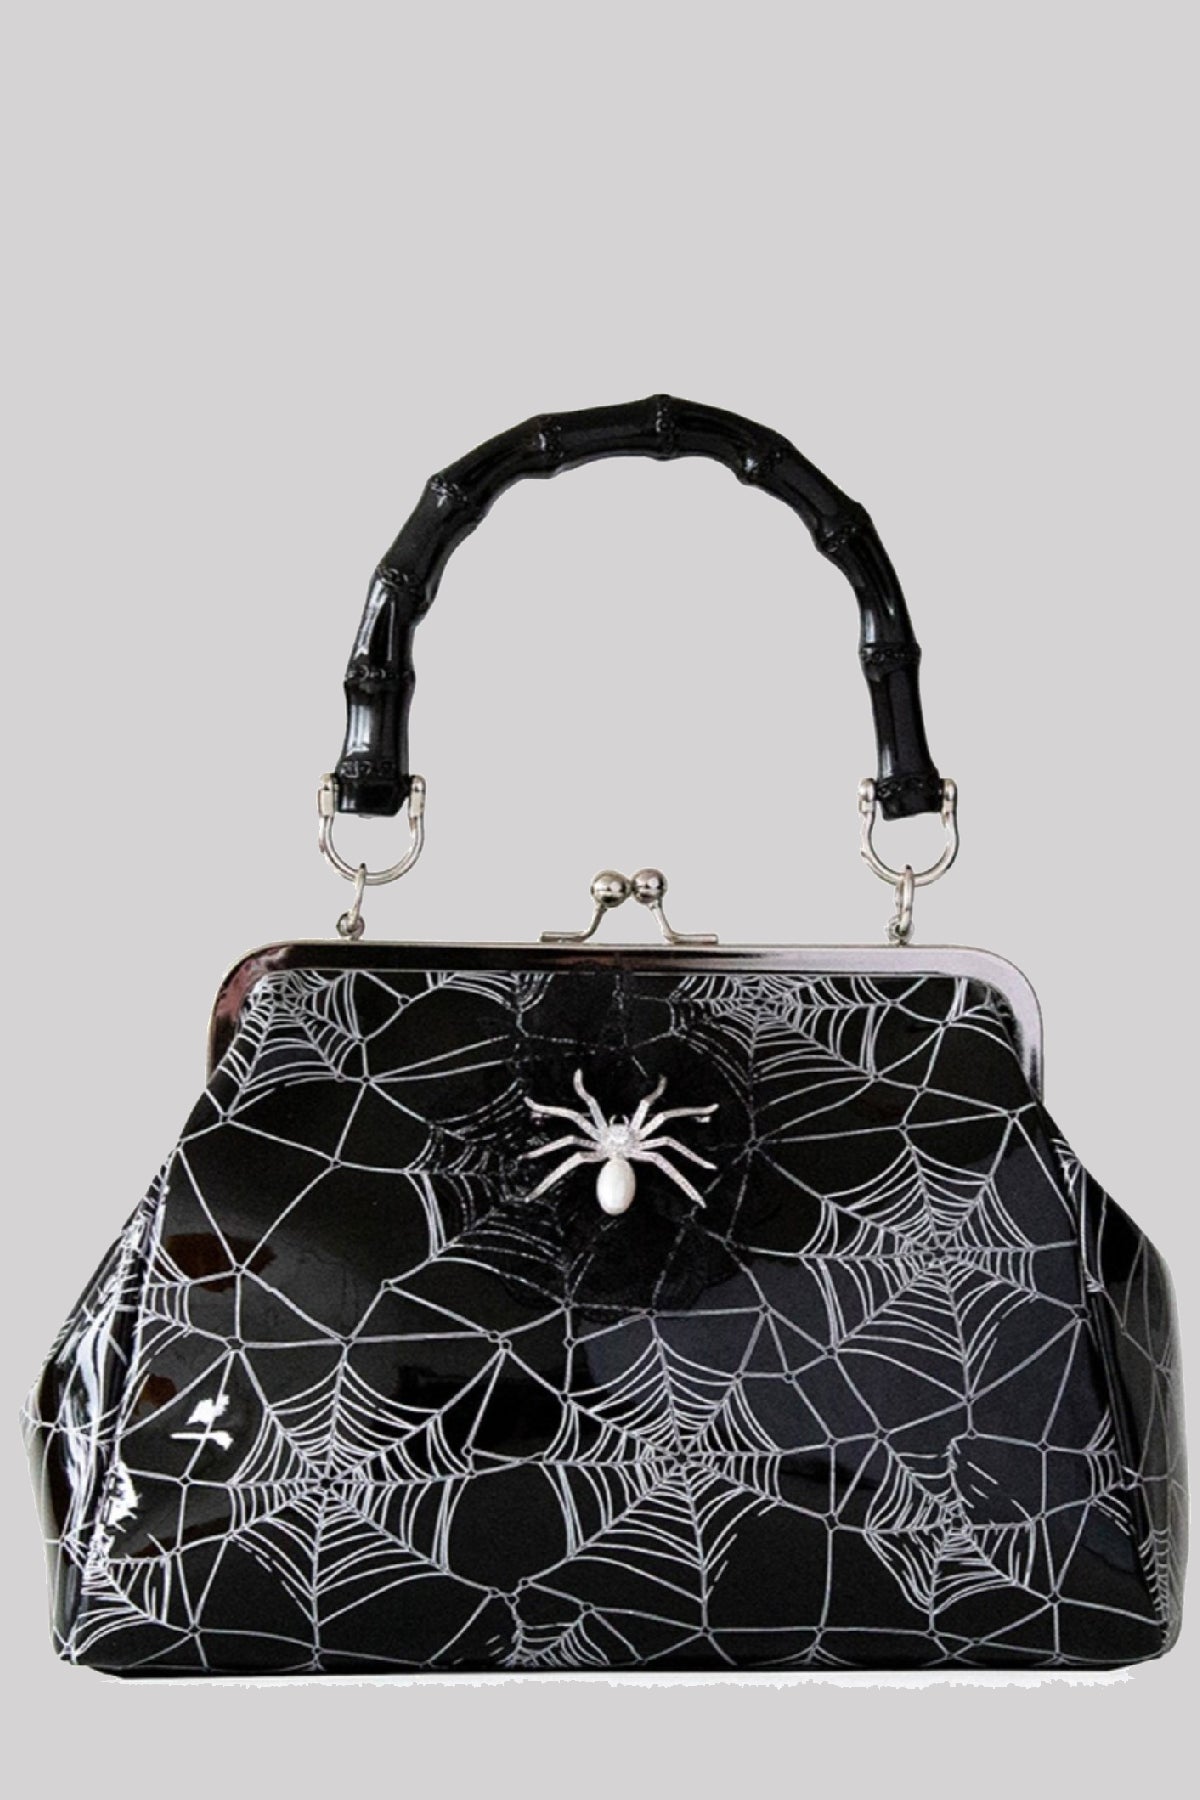 Banned Killian Cobweb Spider Brooch Gothic PU Shoulder Bag